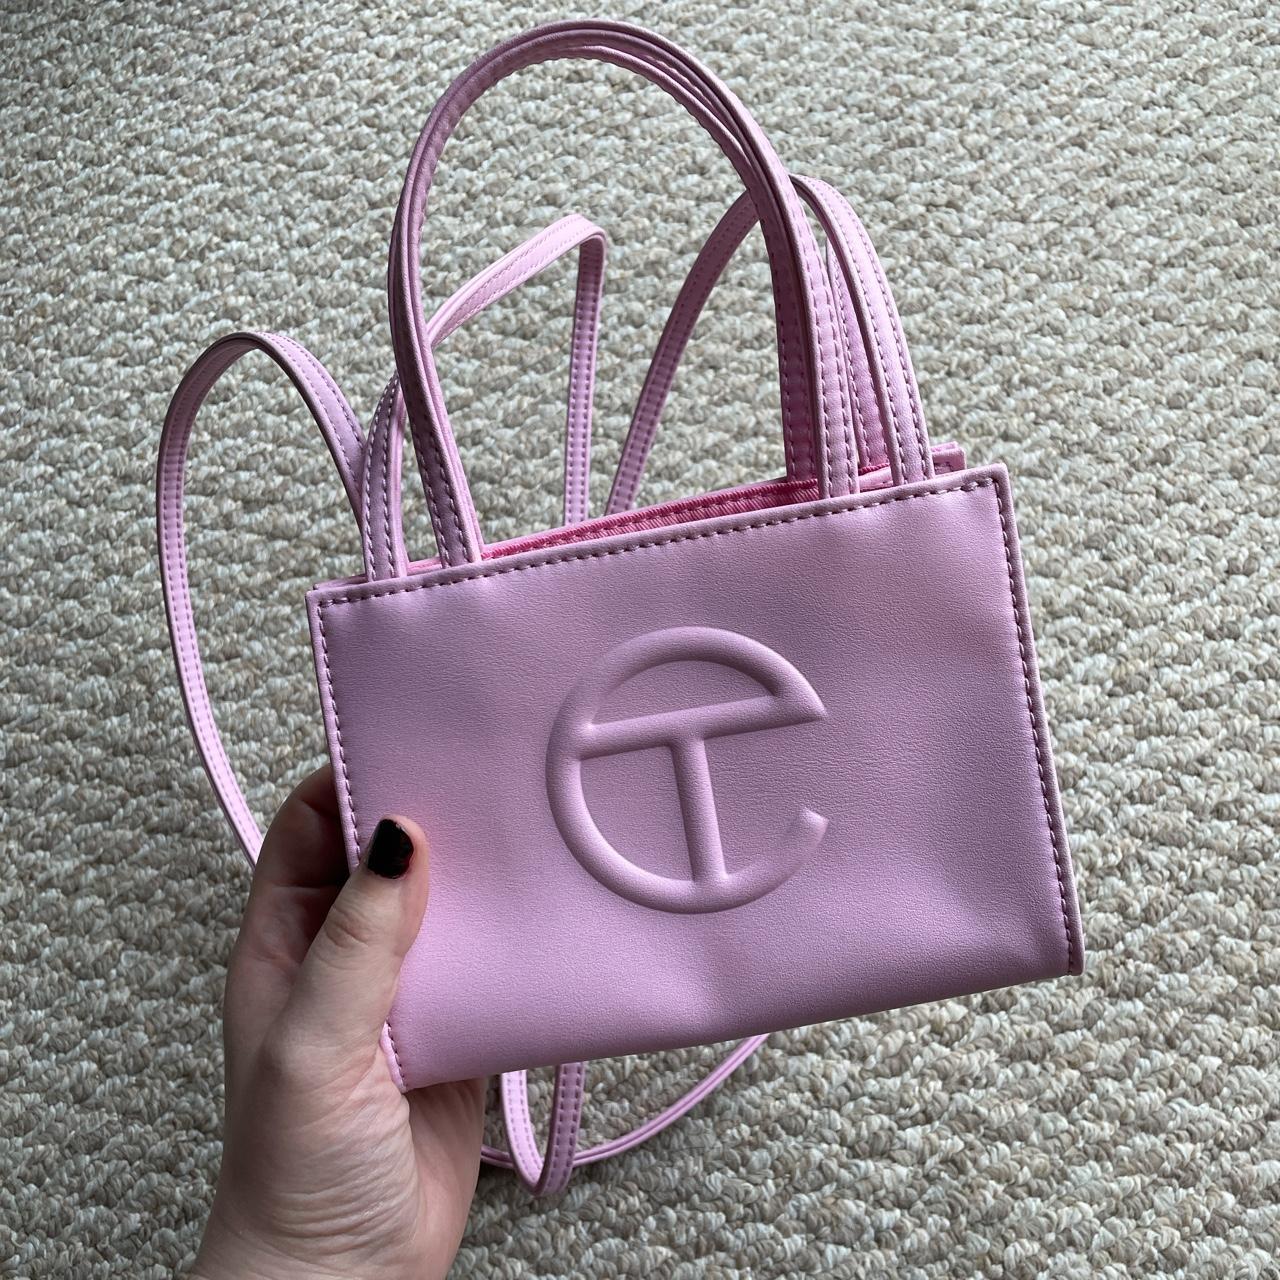 Telfar Women's Pink Bag | Depop